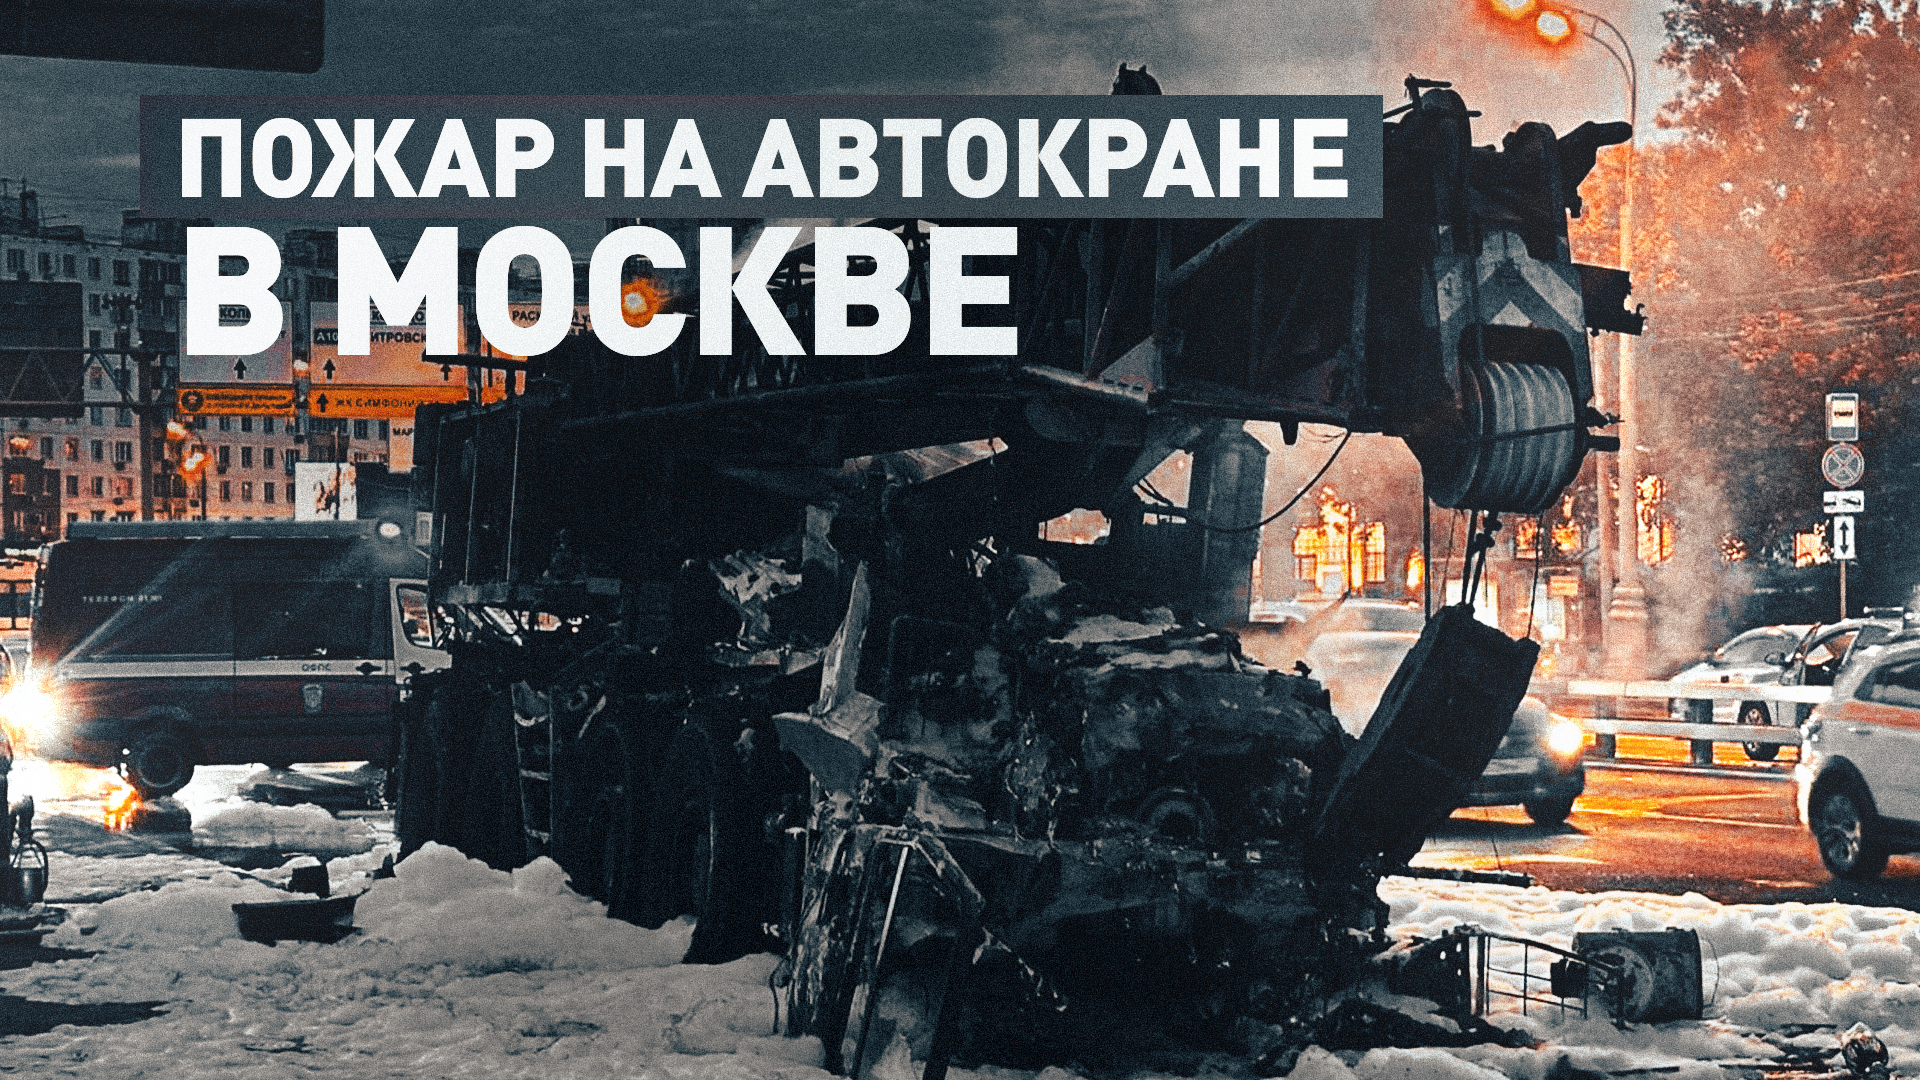 Автокран сгорел на Третьем транспортном кольце в Москве — видео